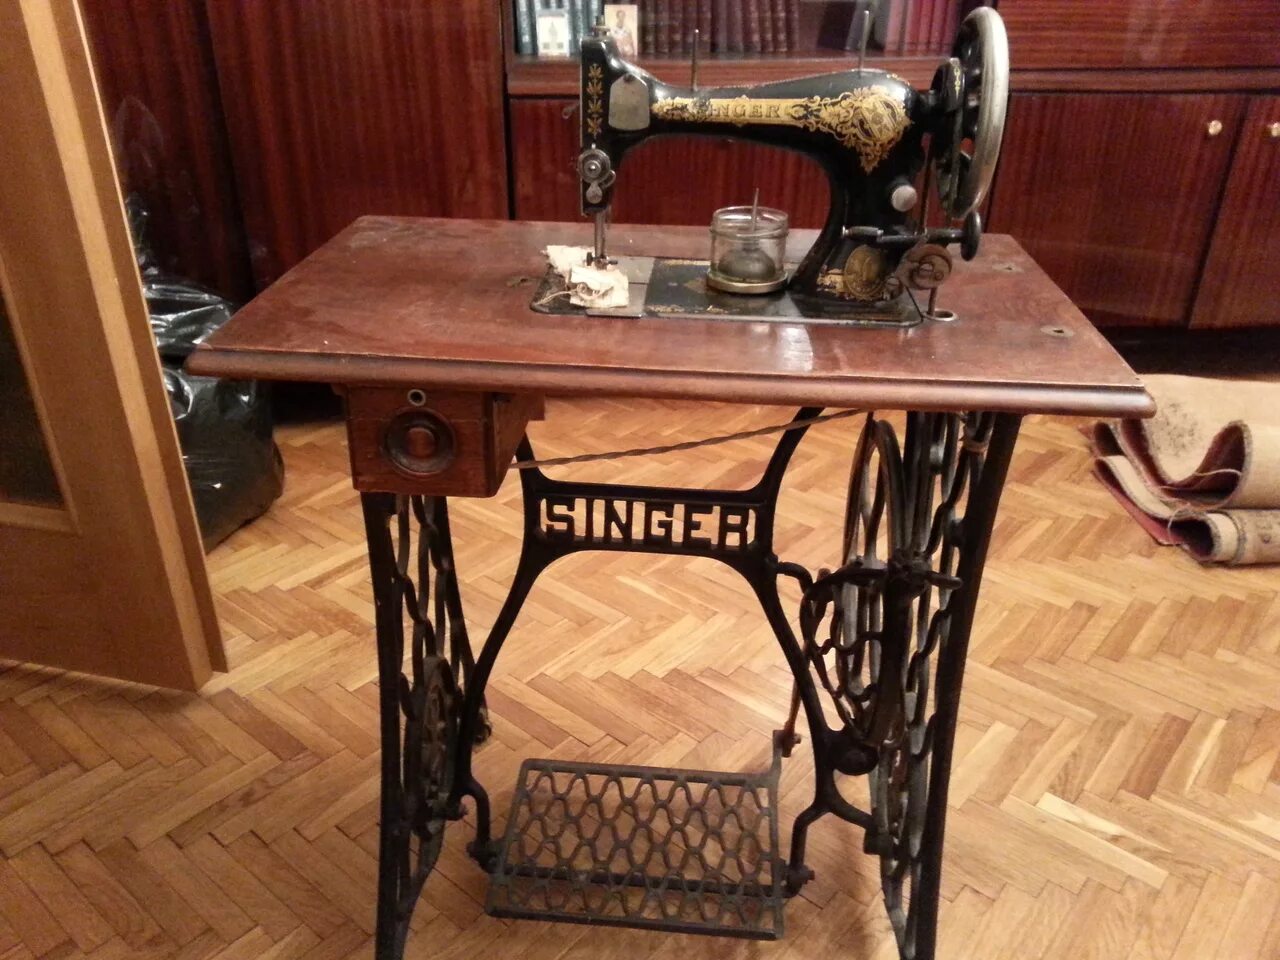 Швейная машинка зингер в москве. Zinger швейная машинка а3535836. Швейная машинка (Zinger super 2001). Швейная машинка Зингер 1875. Зингер швейная машинка 1908.